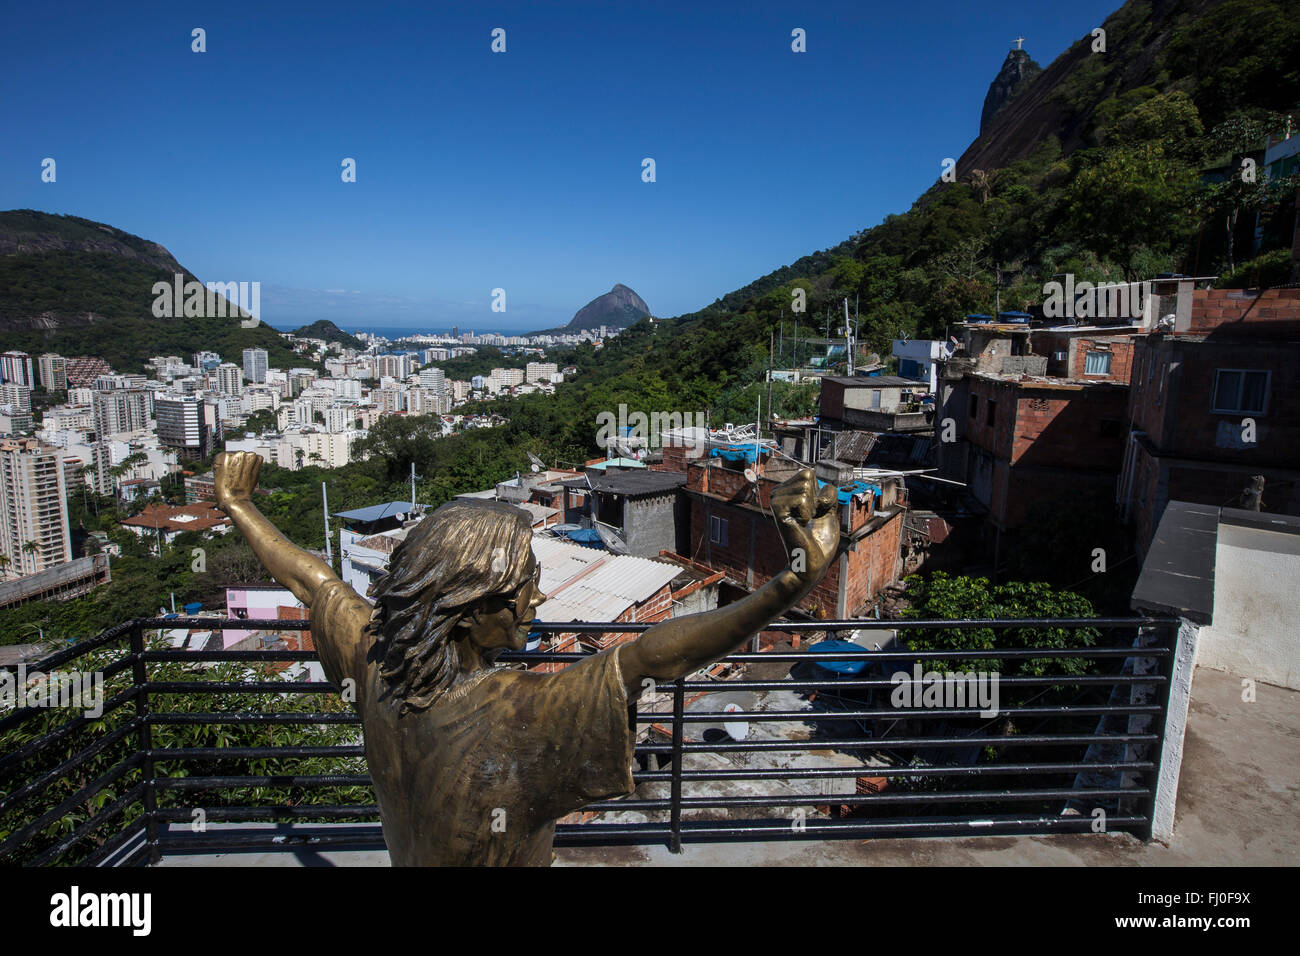 Michael Jackson statua in favela di Santa Marta - contrasto tra la favela shanties e middle-class edifici del quartiere di Botafogo nella zona sud di Rio de Janeiro, Brasile - Cristo Redentore statua in background. Foto Stock